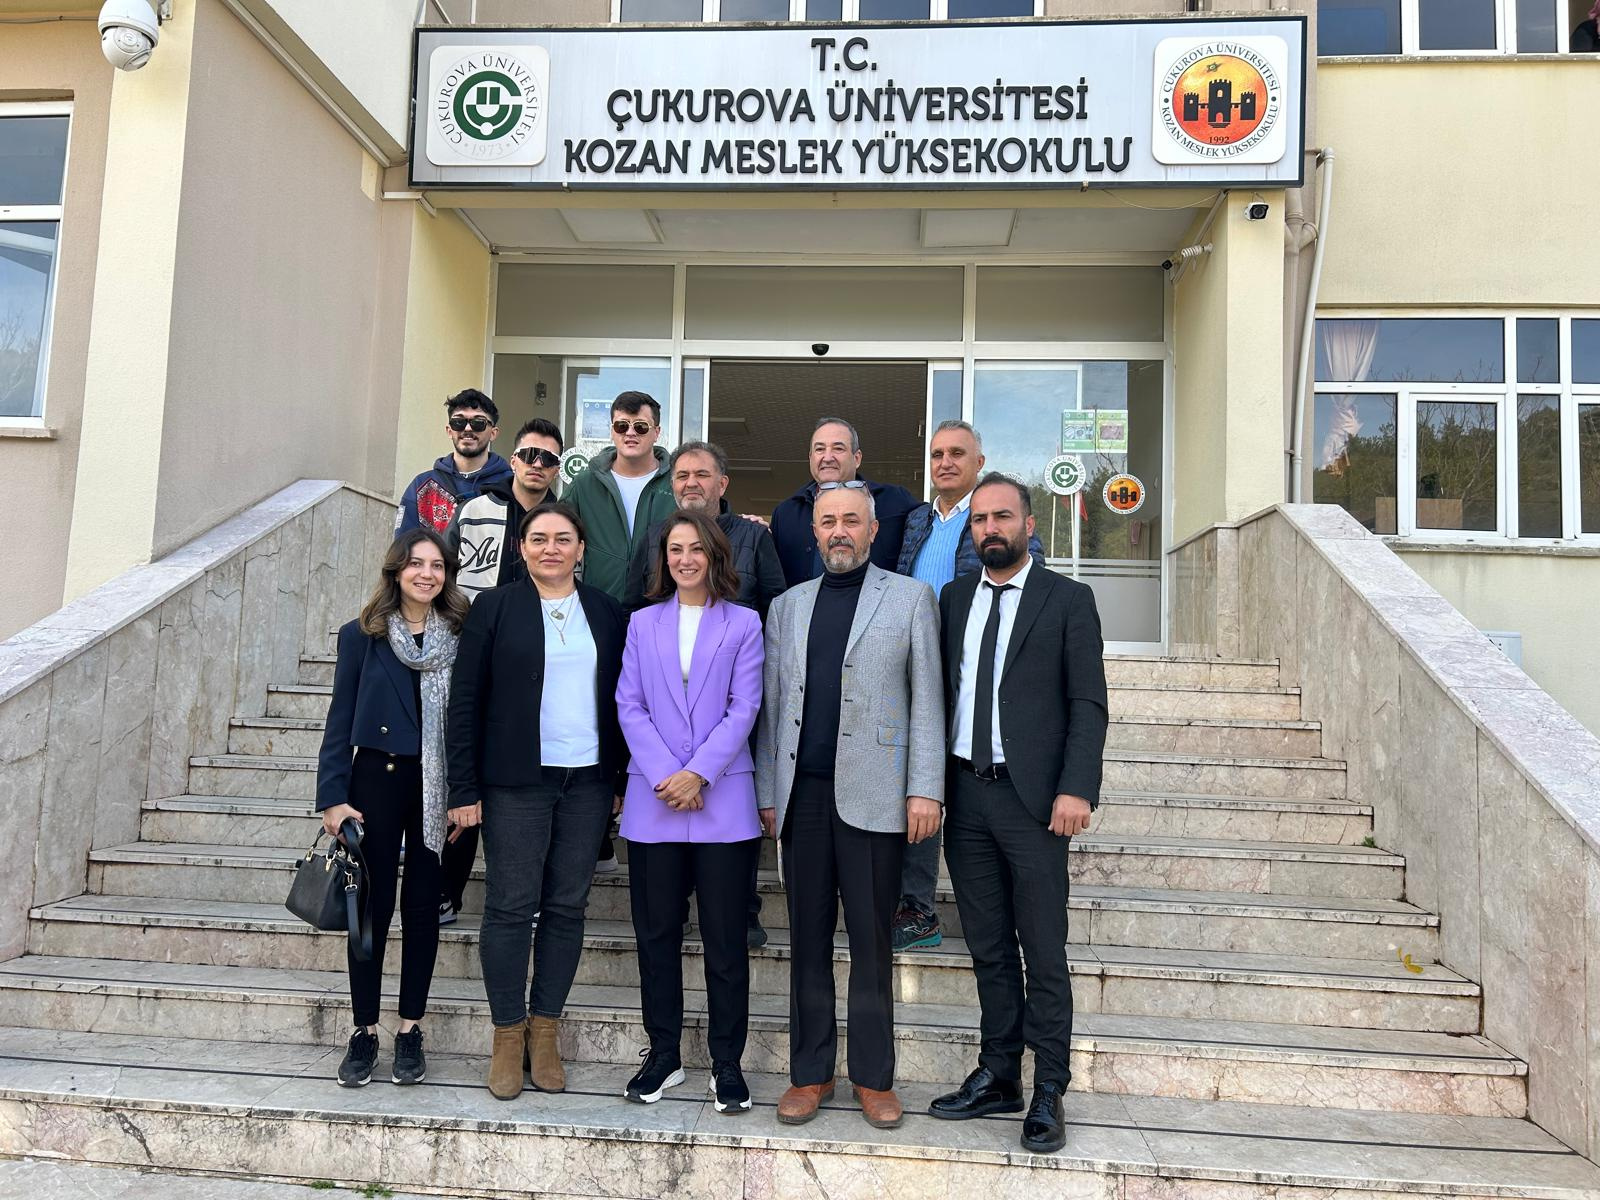 Cumhuriyet Halk Partisi (CHP) Kozan Belediye Başkan Adayı Av. Sudiye Gizem AKSOYLU Yüksekokulumuza Nezaket Ziyaretinde Bulundu